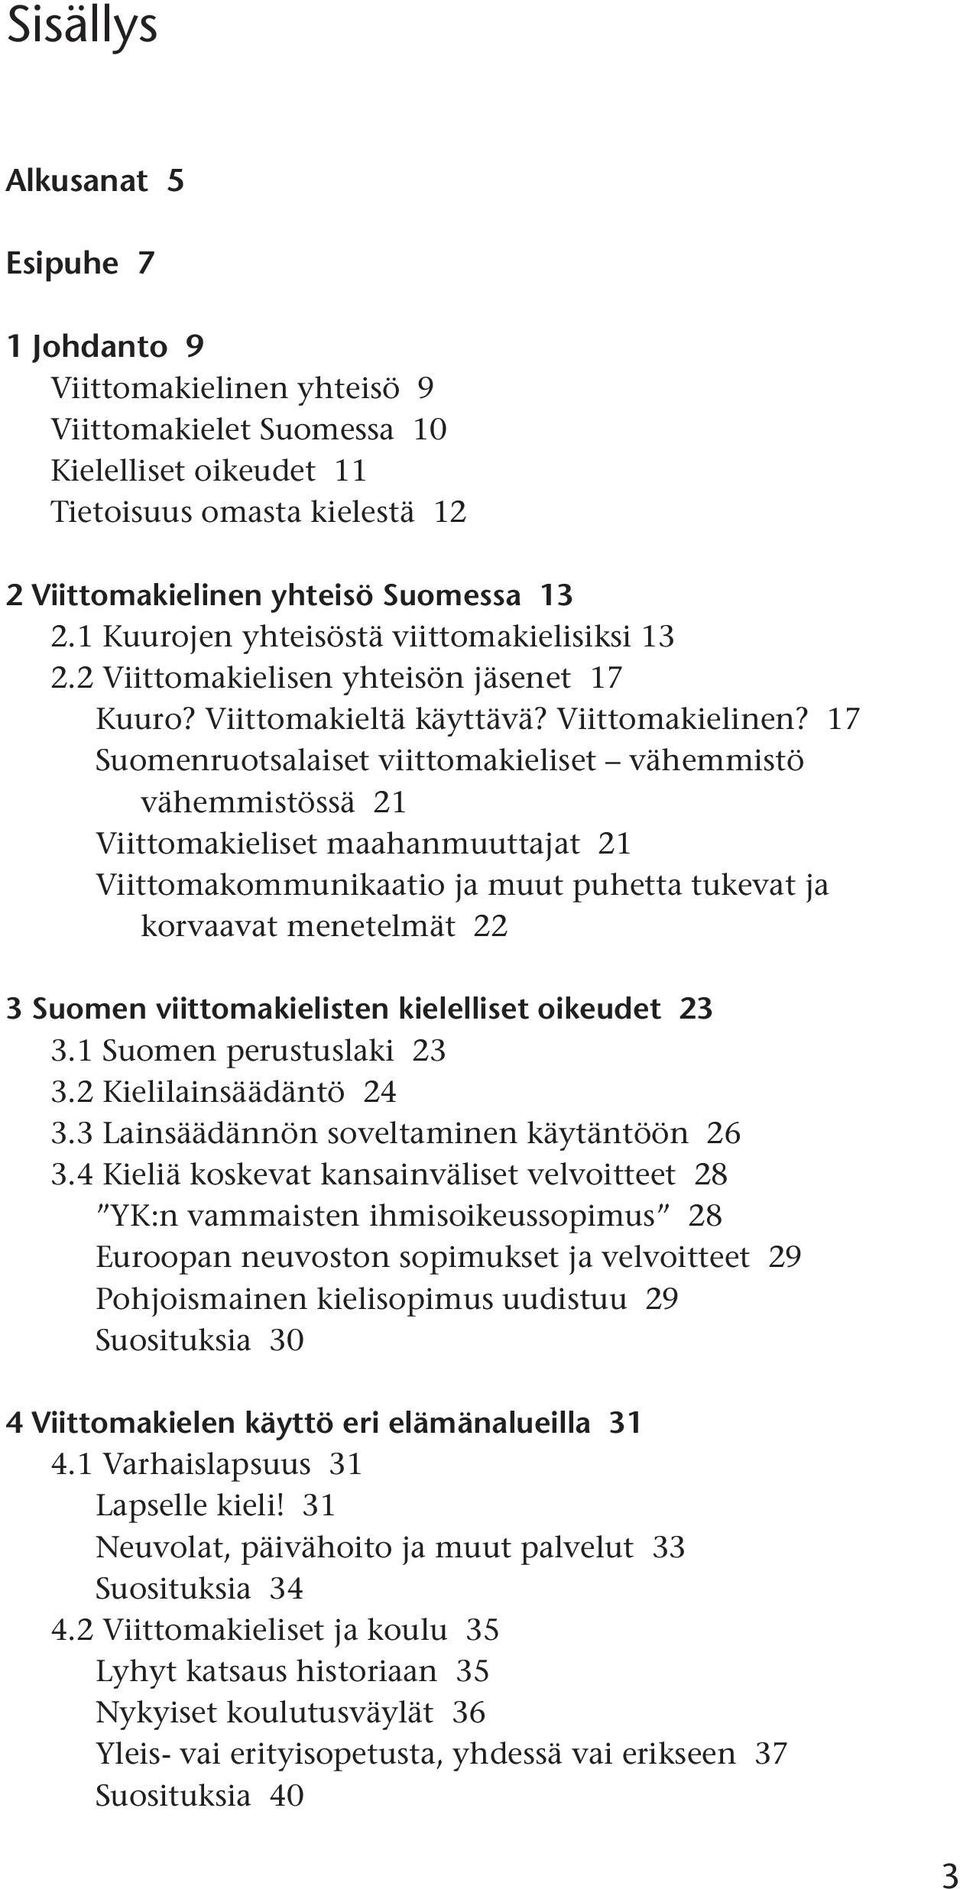 17 Suomenruotsalaiset viittomakieliset vähemmistö vähemmistössä 21 Viittomakieliset maahanmuuttajat 21 Viittomakommunikaatio ja muut puhetta tukevat ja korvaavat menetelmät 22 3 Suomen